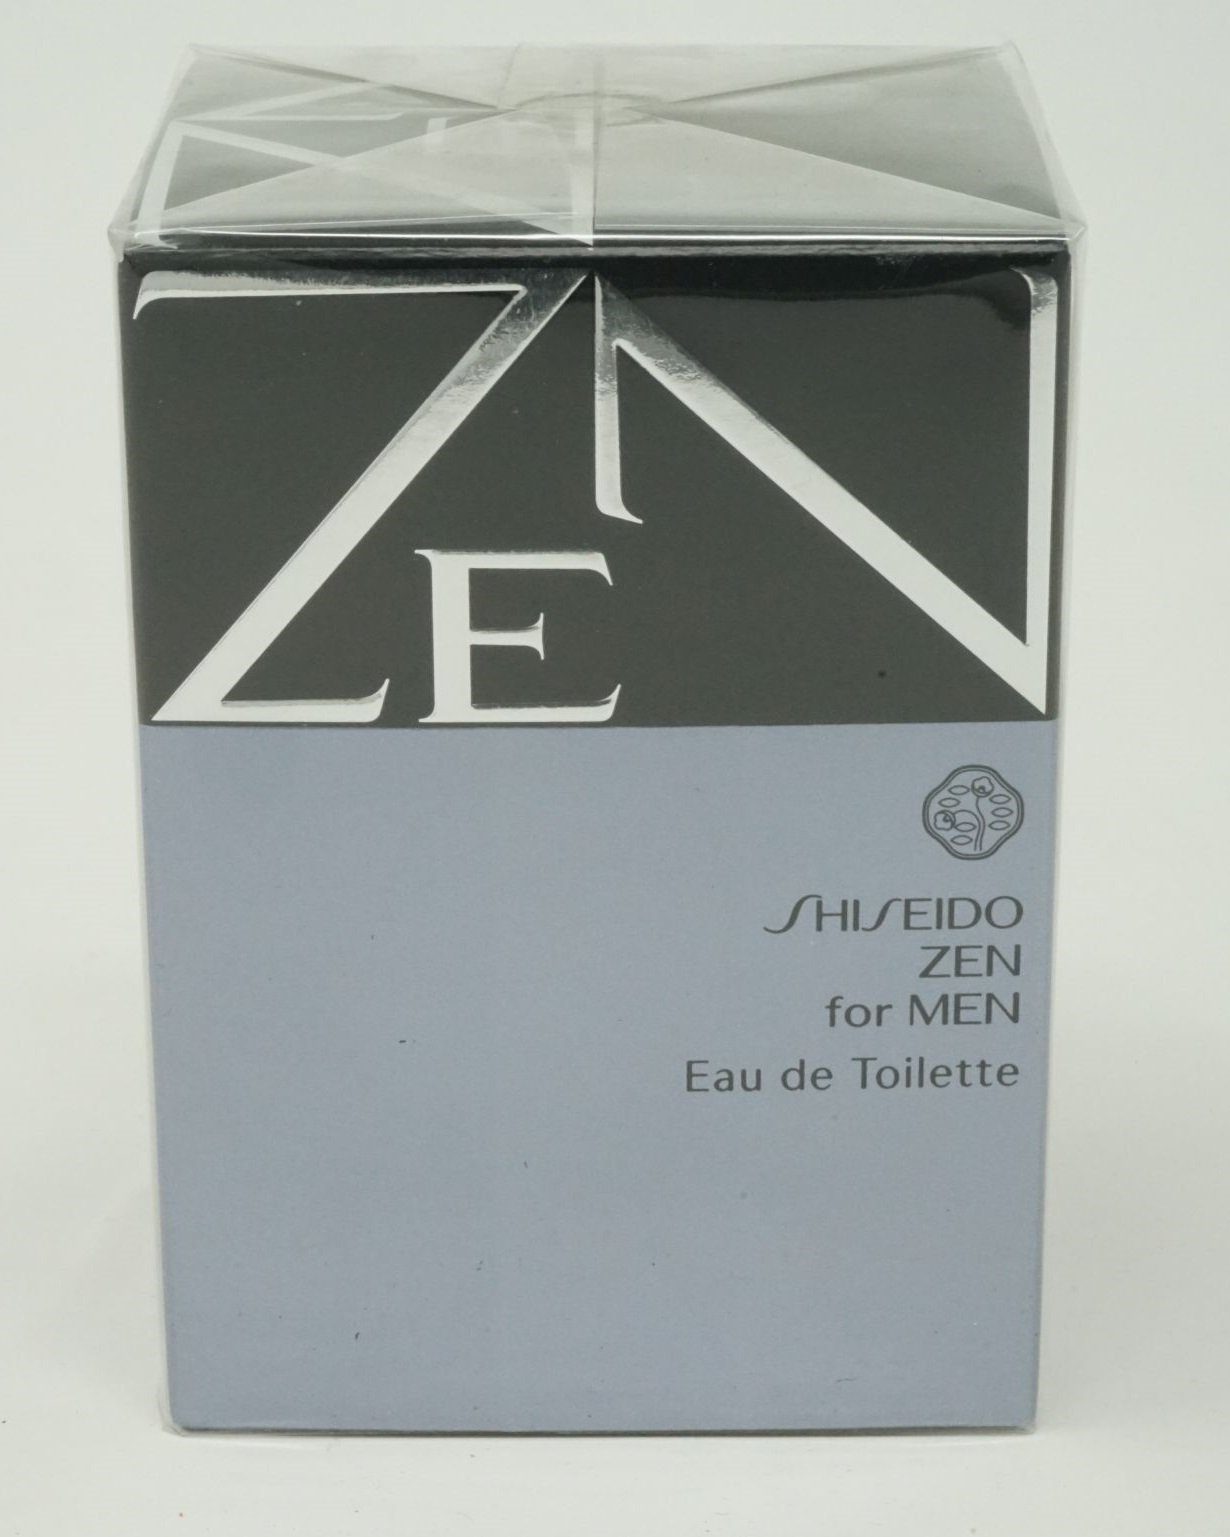 SHISEIDO Eau de Toilette Shiseido Zen For Men Eau de Toilette Spray 100ml